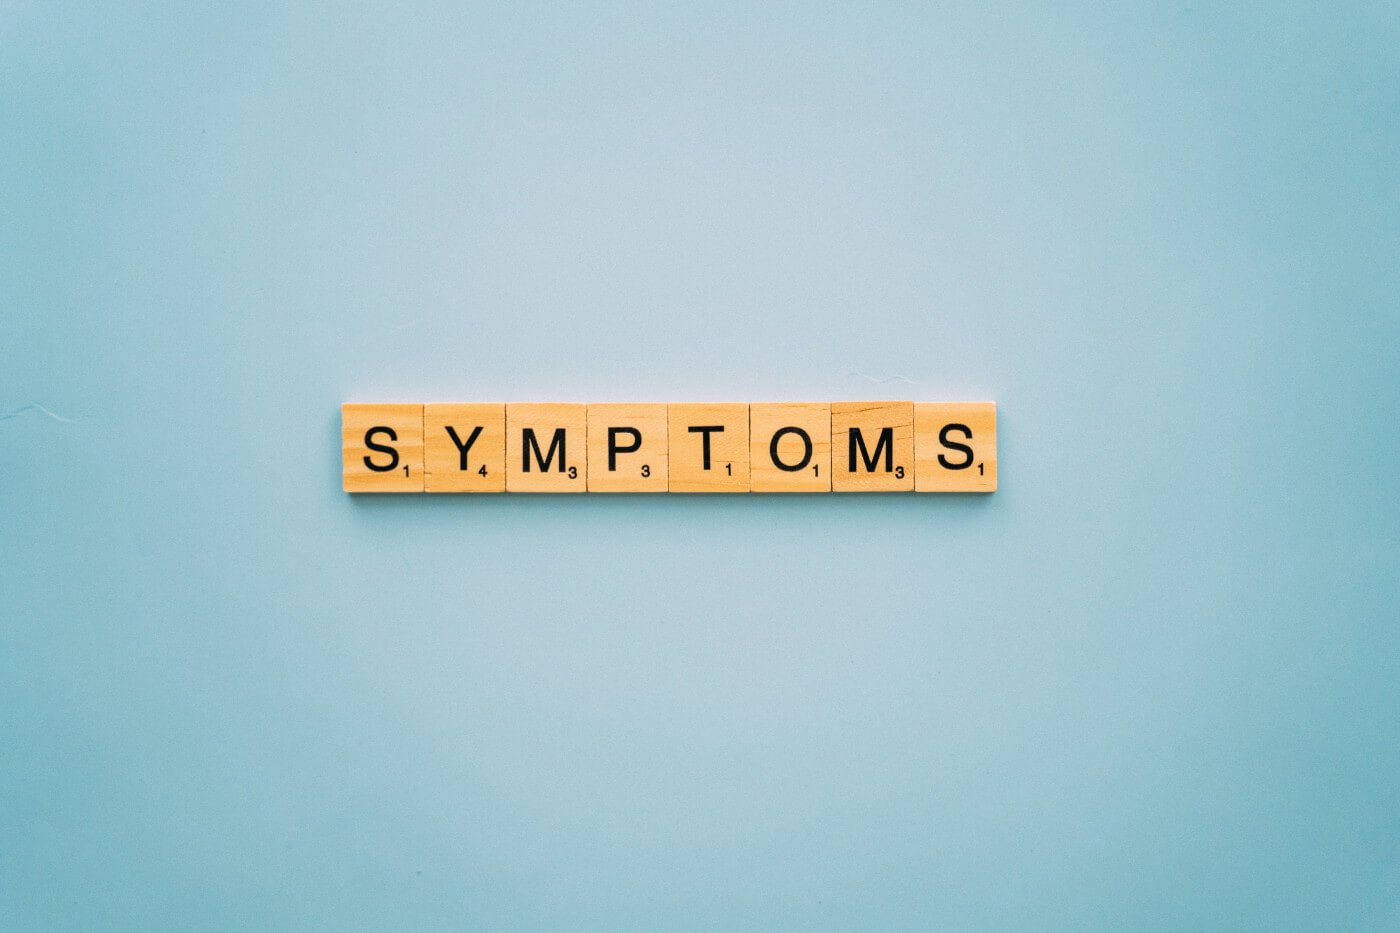 toxic shock syndrome symptoms